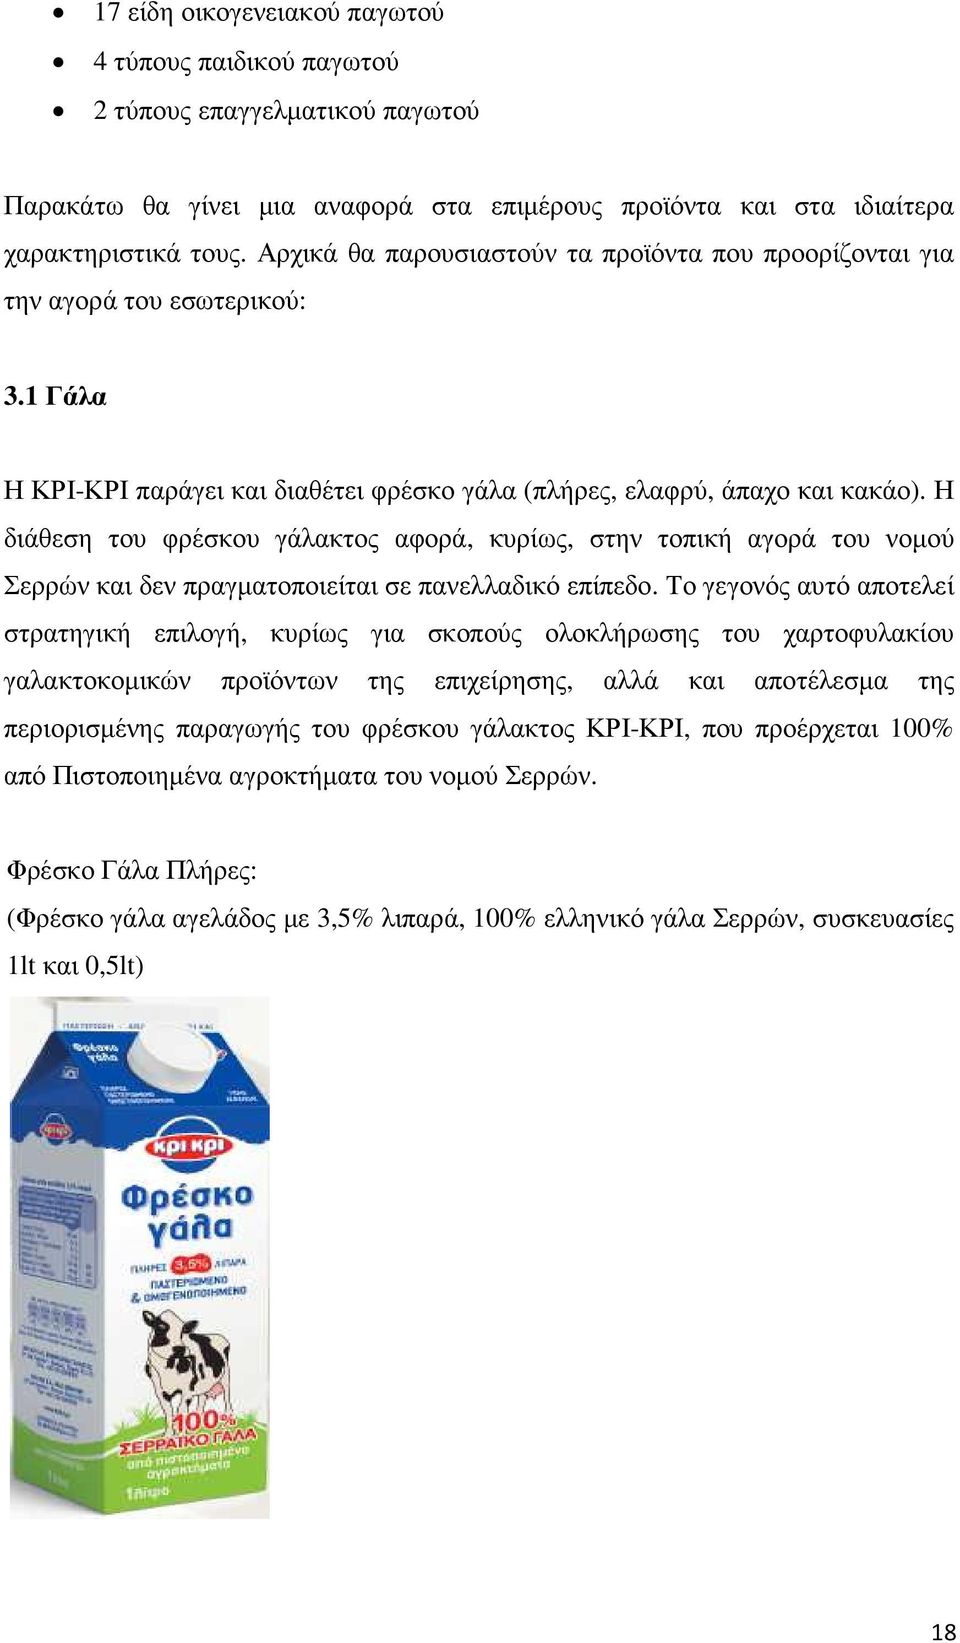 Η διάθεση του φρέσκου γάλακτος αφορά, κυρίως, στην τοπική αγορά του νοµού Σερρών και δεν πραγµατοποιείται σε πανελλαδικό επίπεδο.